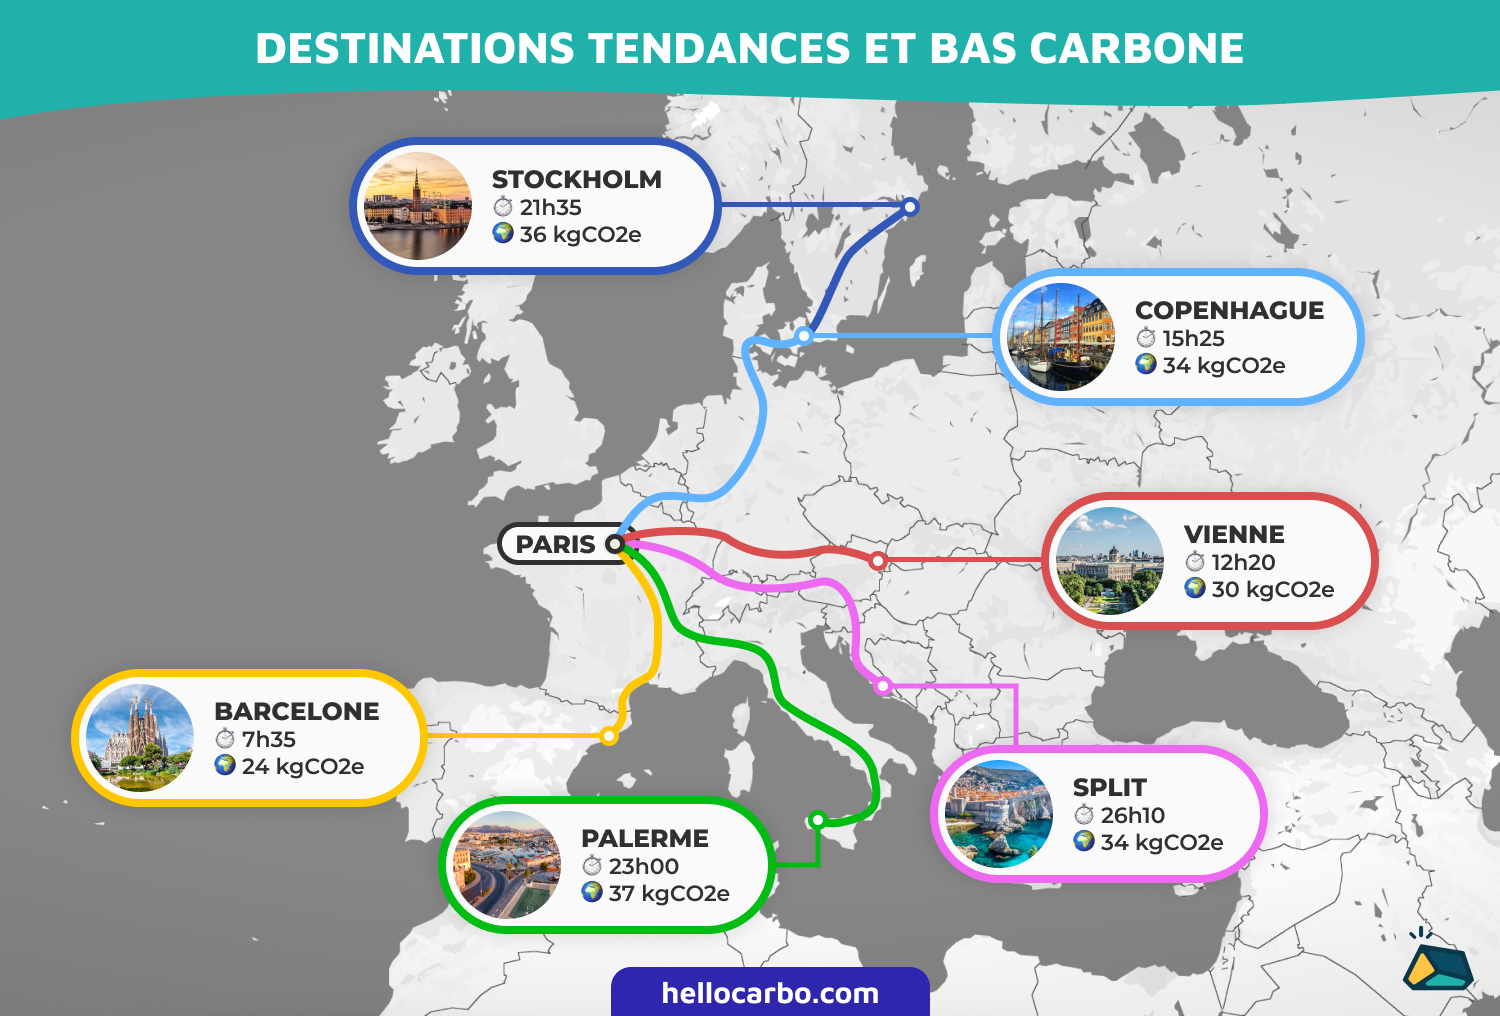  - 6 destinations tendances pour cet été sans augmenter sa dépense carbone